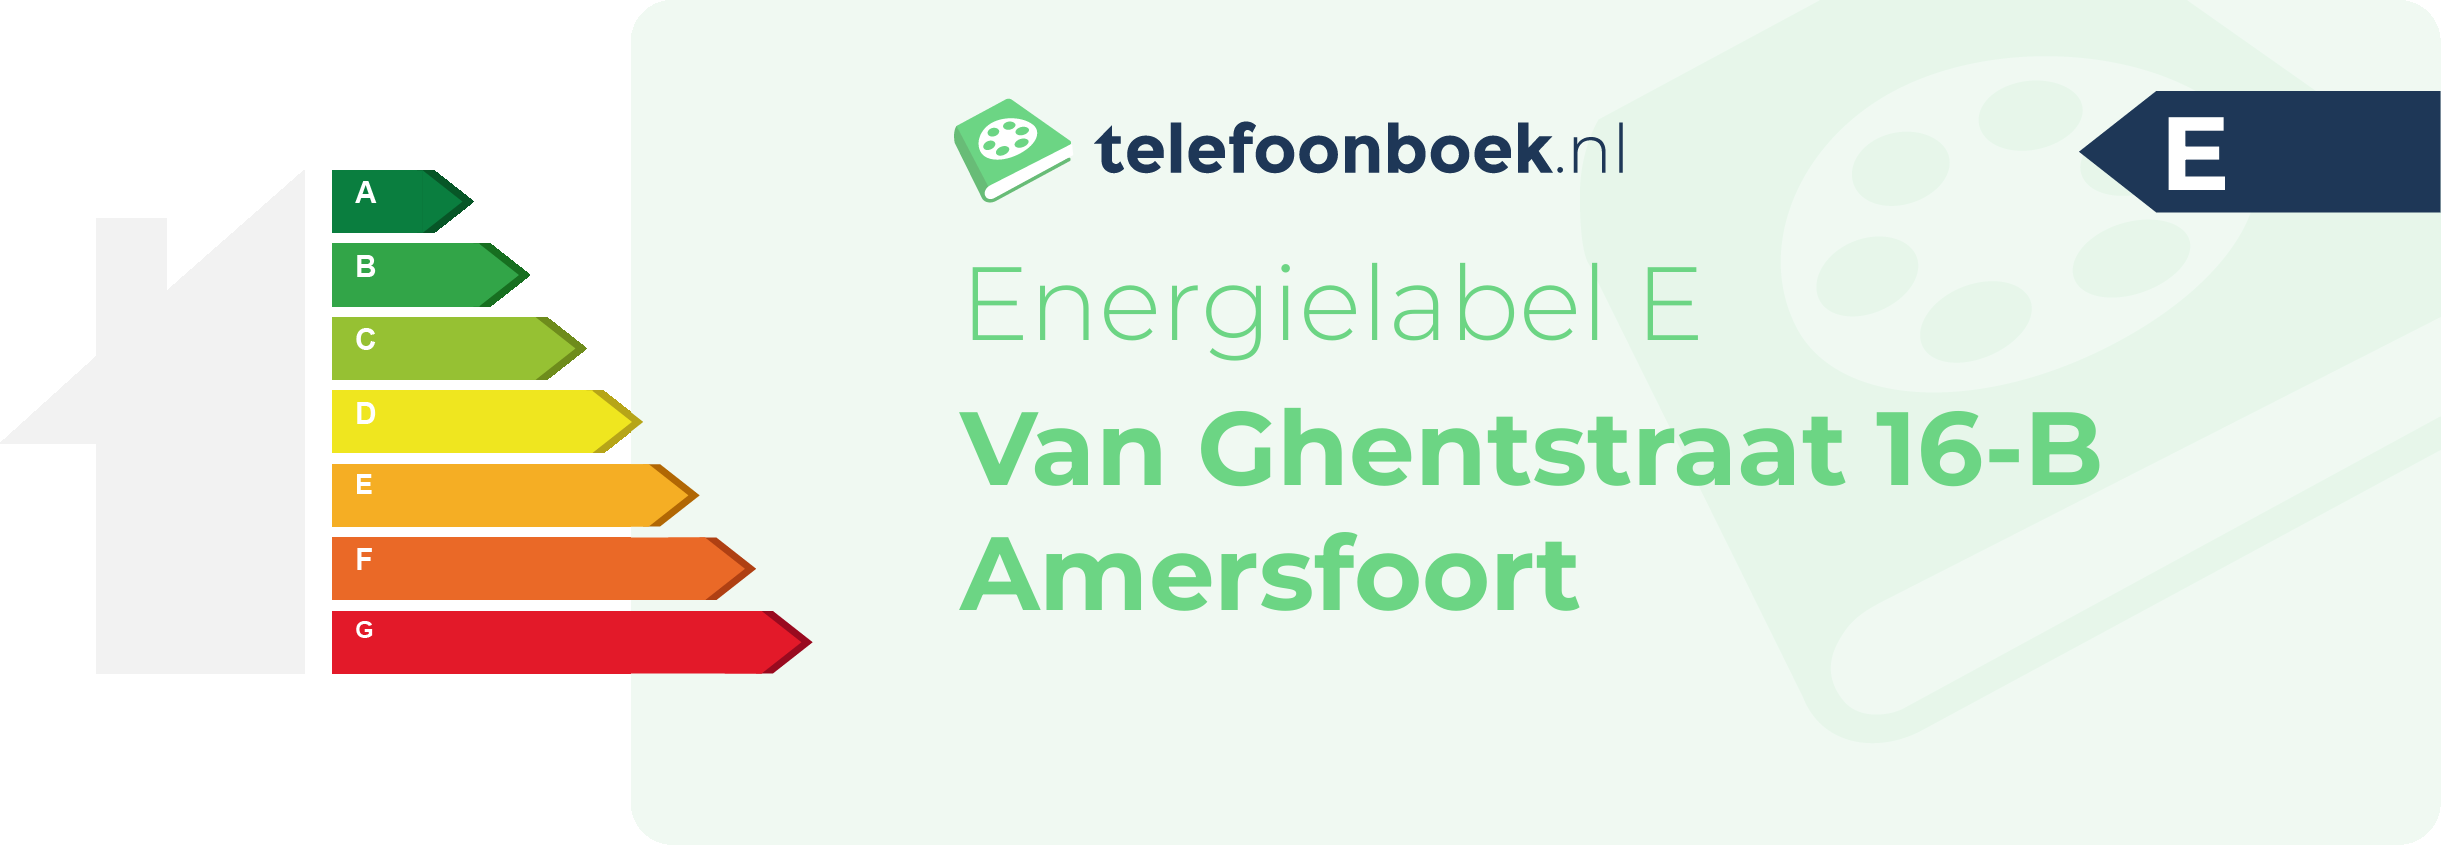 Energielabel Van Ghentstraat 16-B Amersfoort